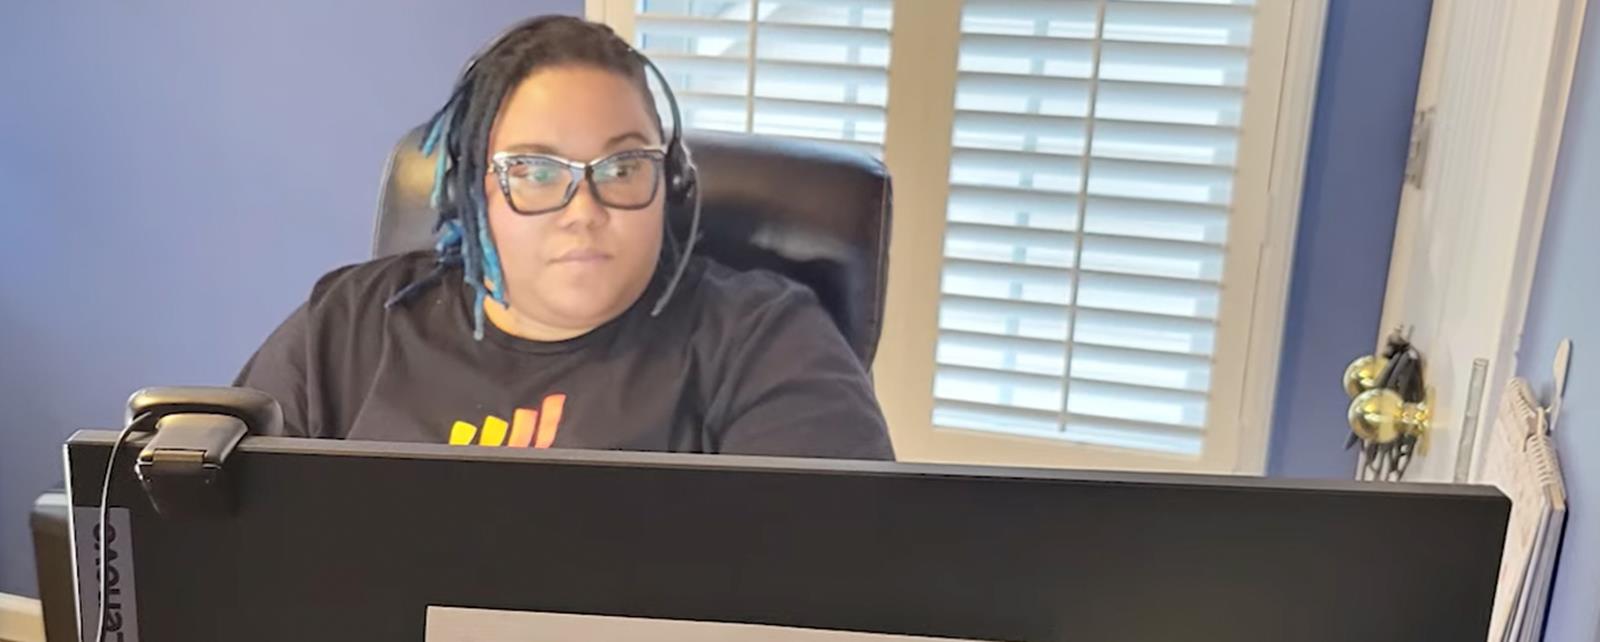 V Teamer Working At Computer